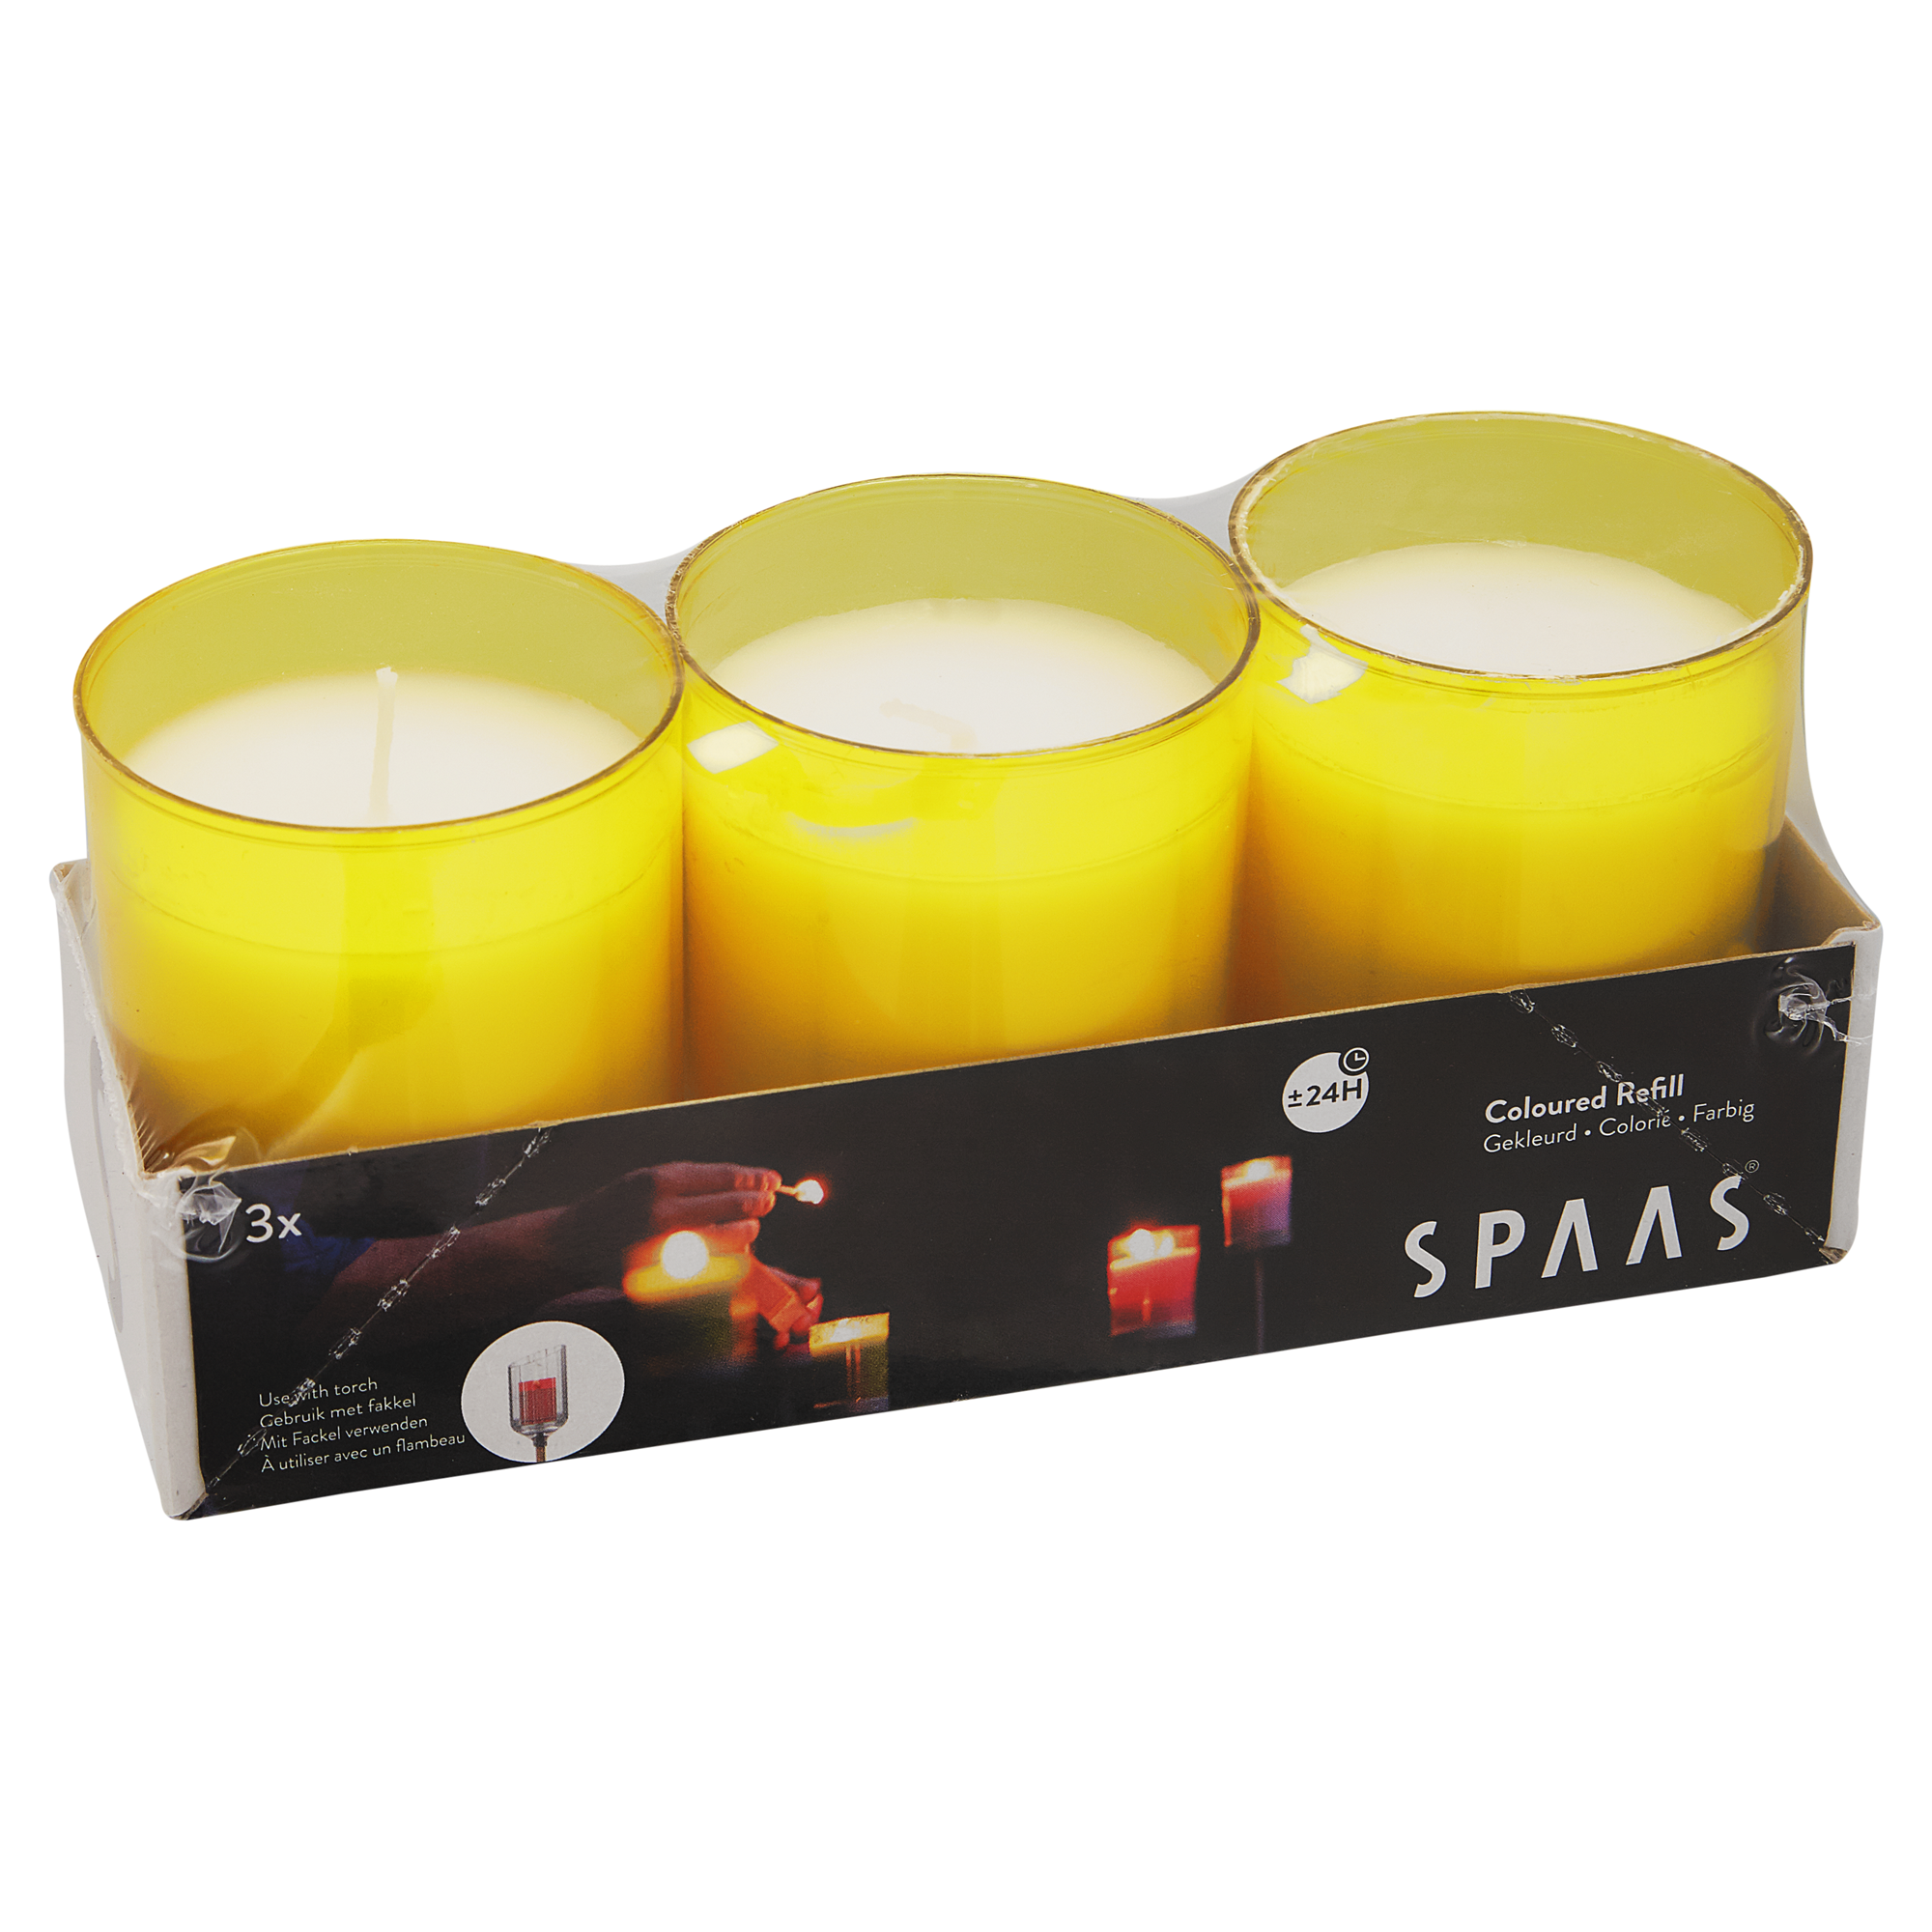 Kerzen für Gartenfackel gelb 11 cm 3 Stück + product picture